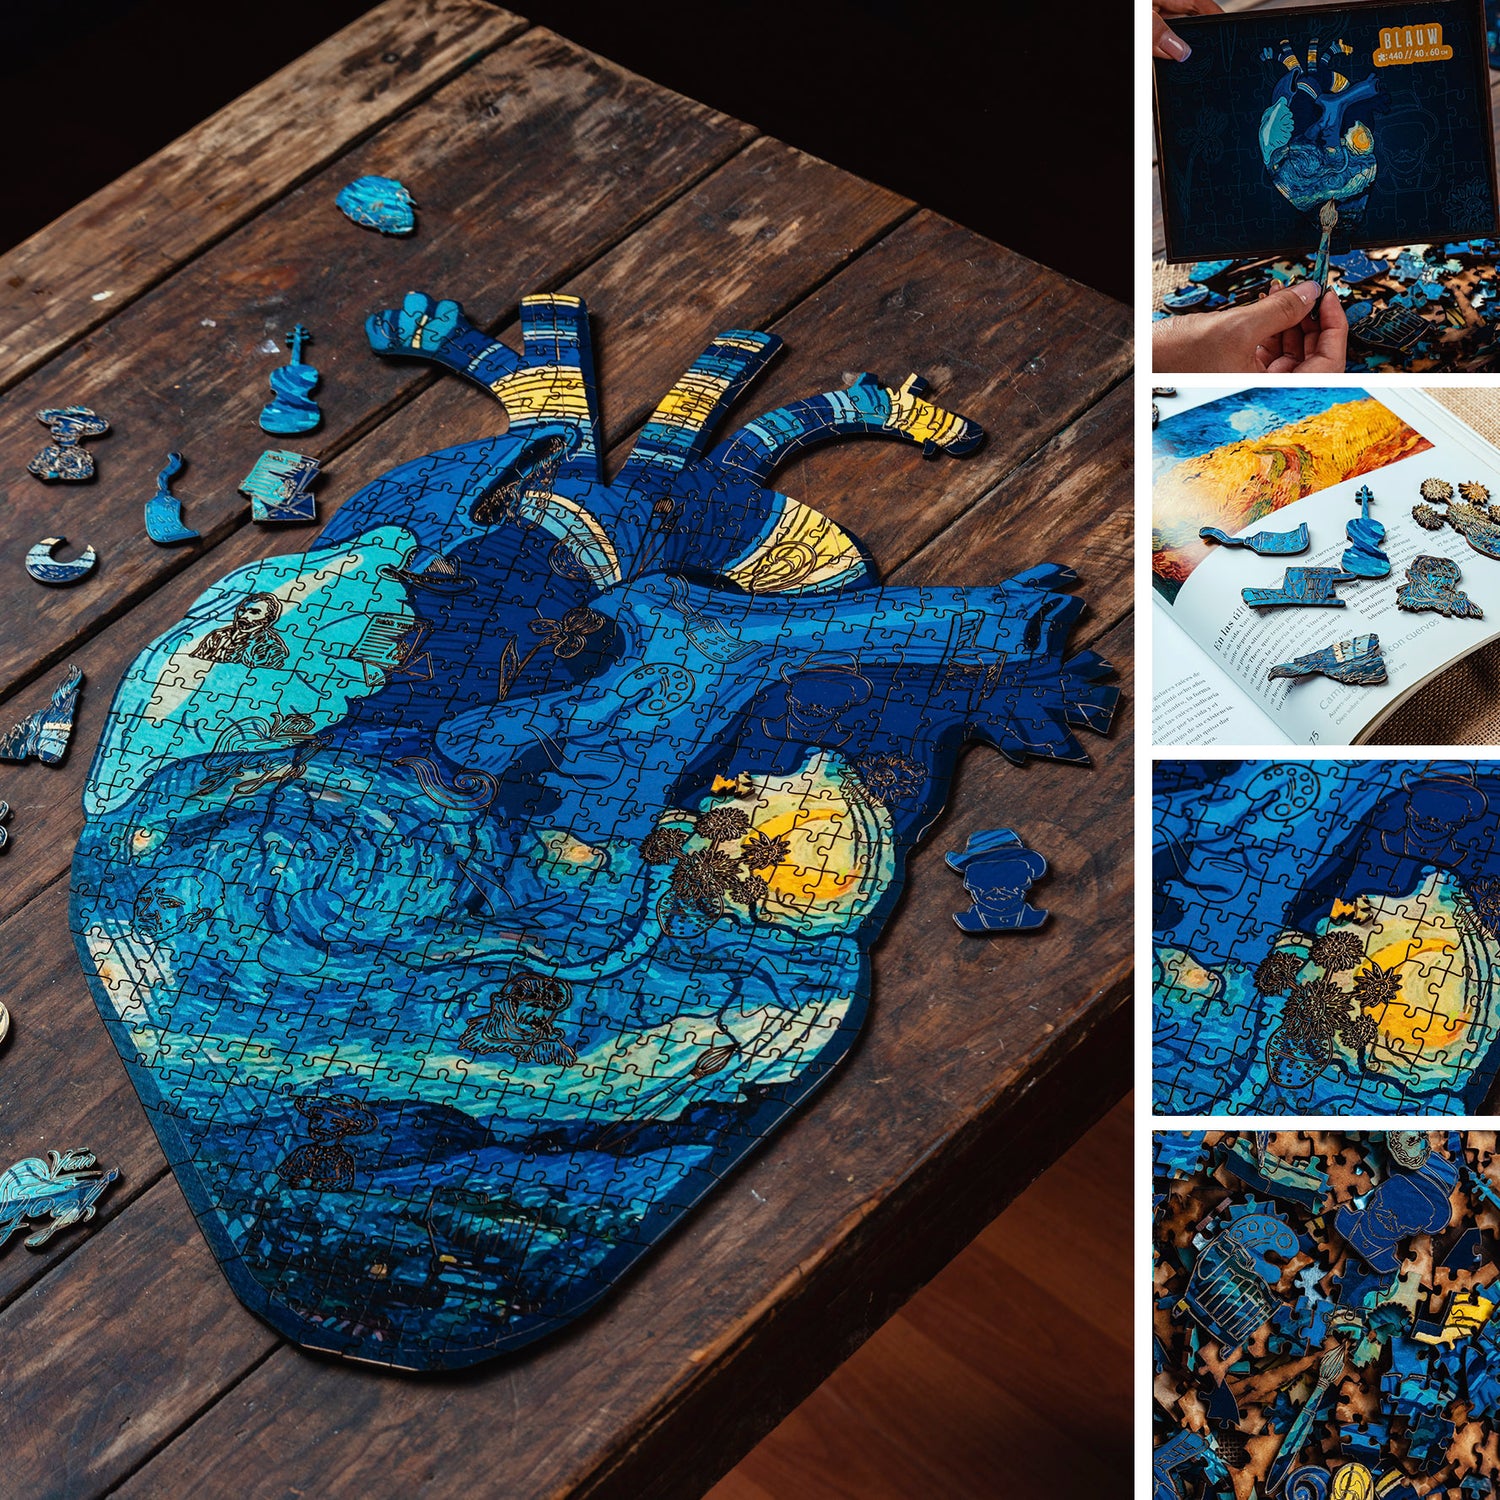 Van Gogh/el corazon azul